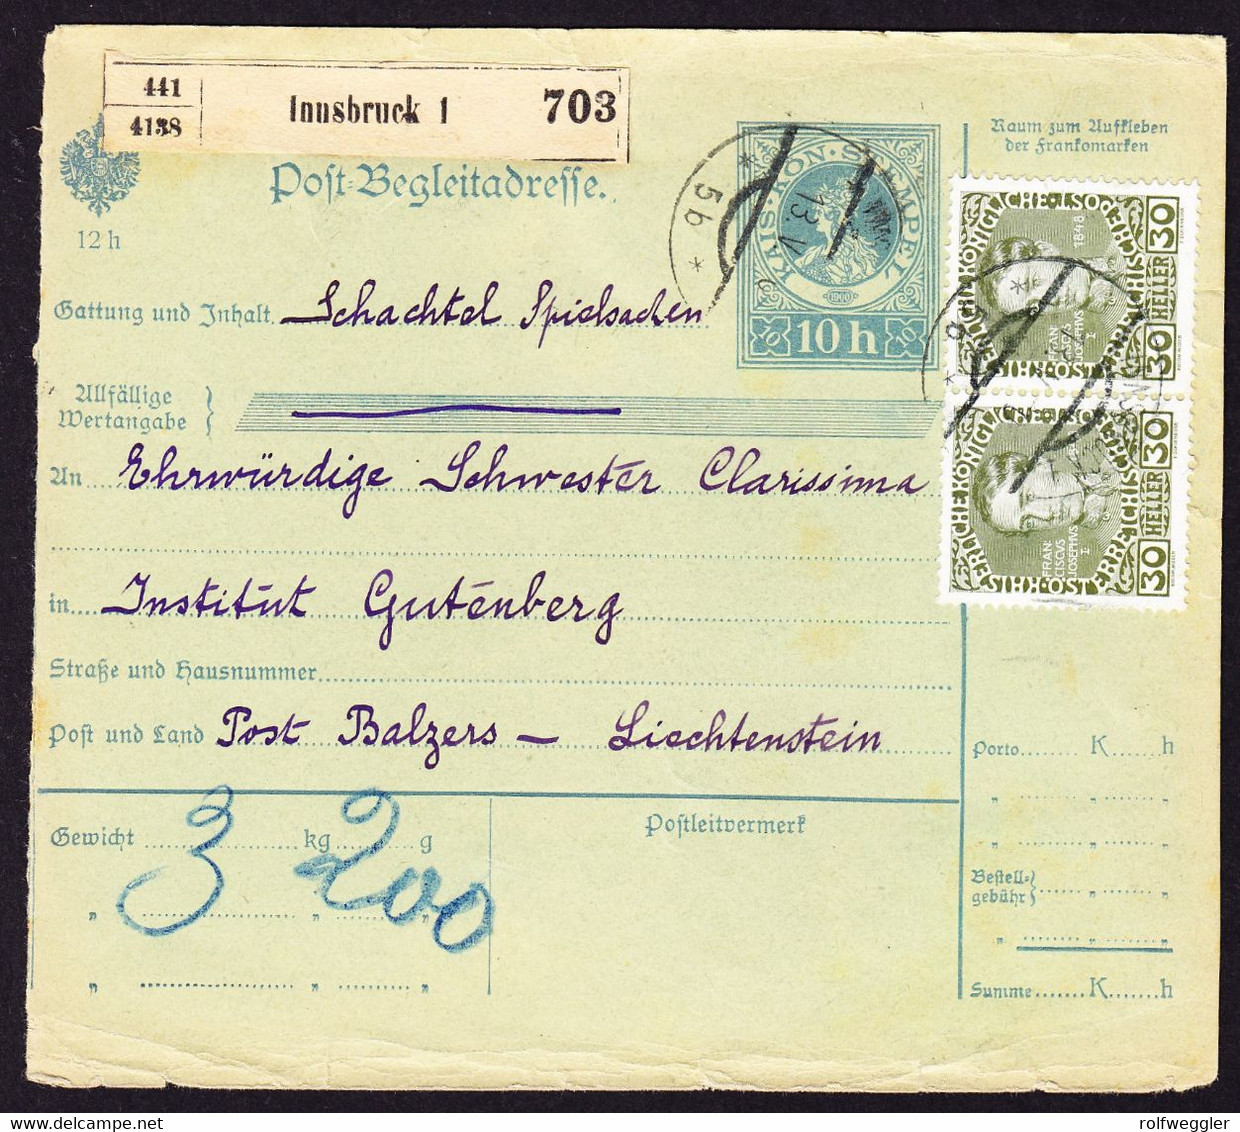 1910 Oesterreichische Begleitadresse Für Spielsachen Aus Innsbruck Nach Balzers. Ankunftsstempel Auf Portomarke 4 Heller - Postage Due